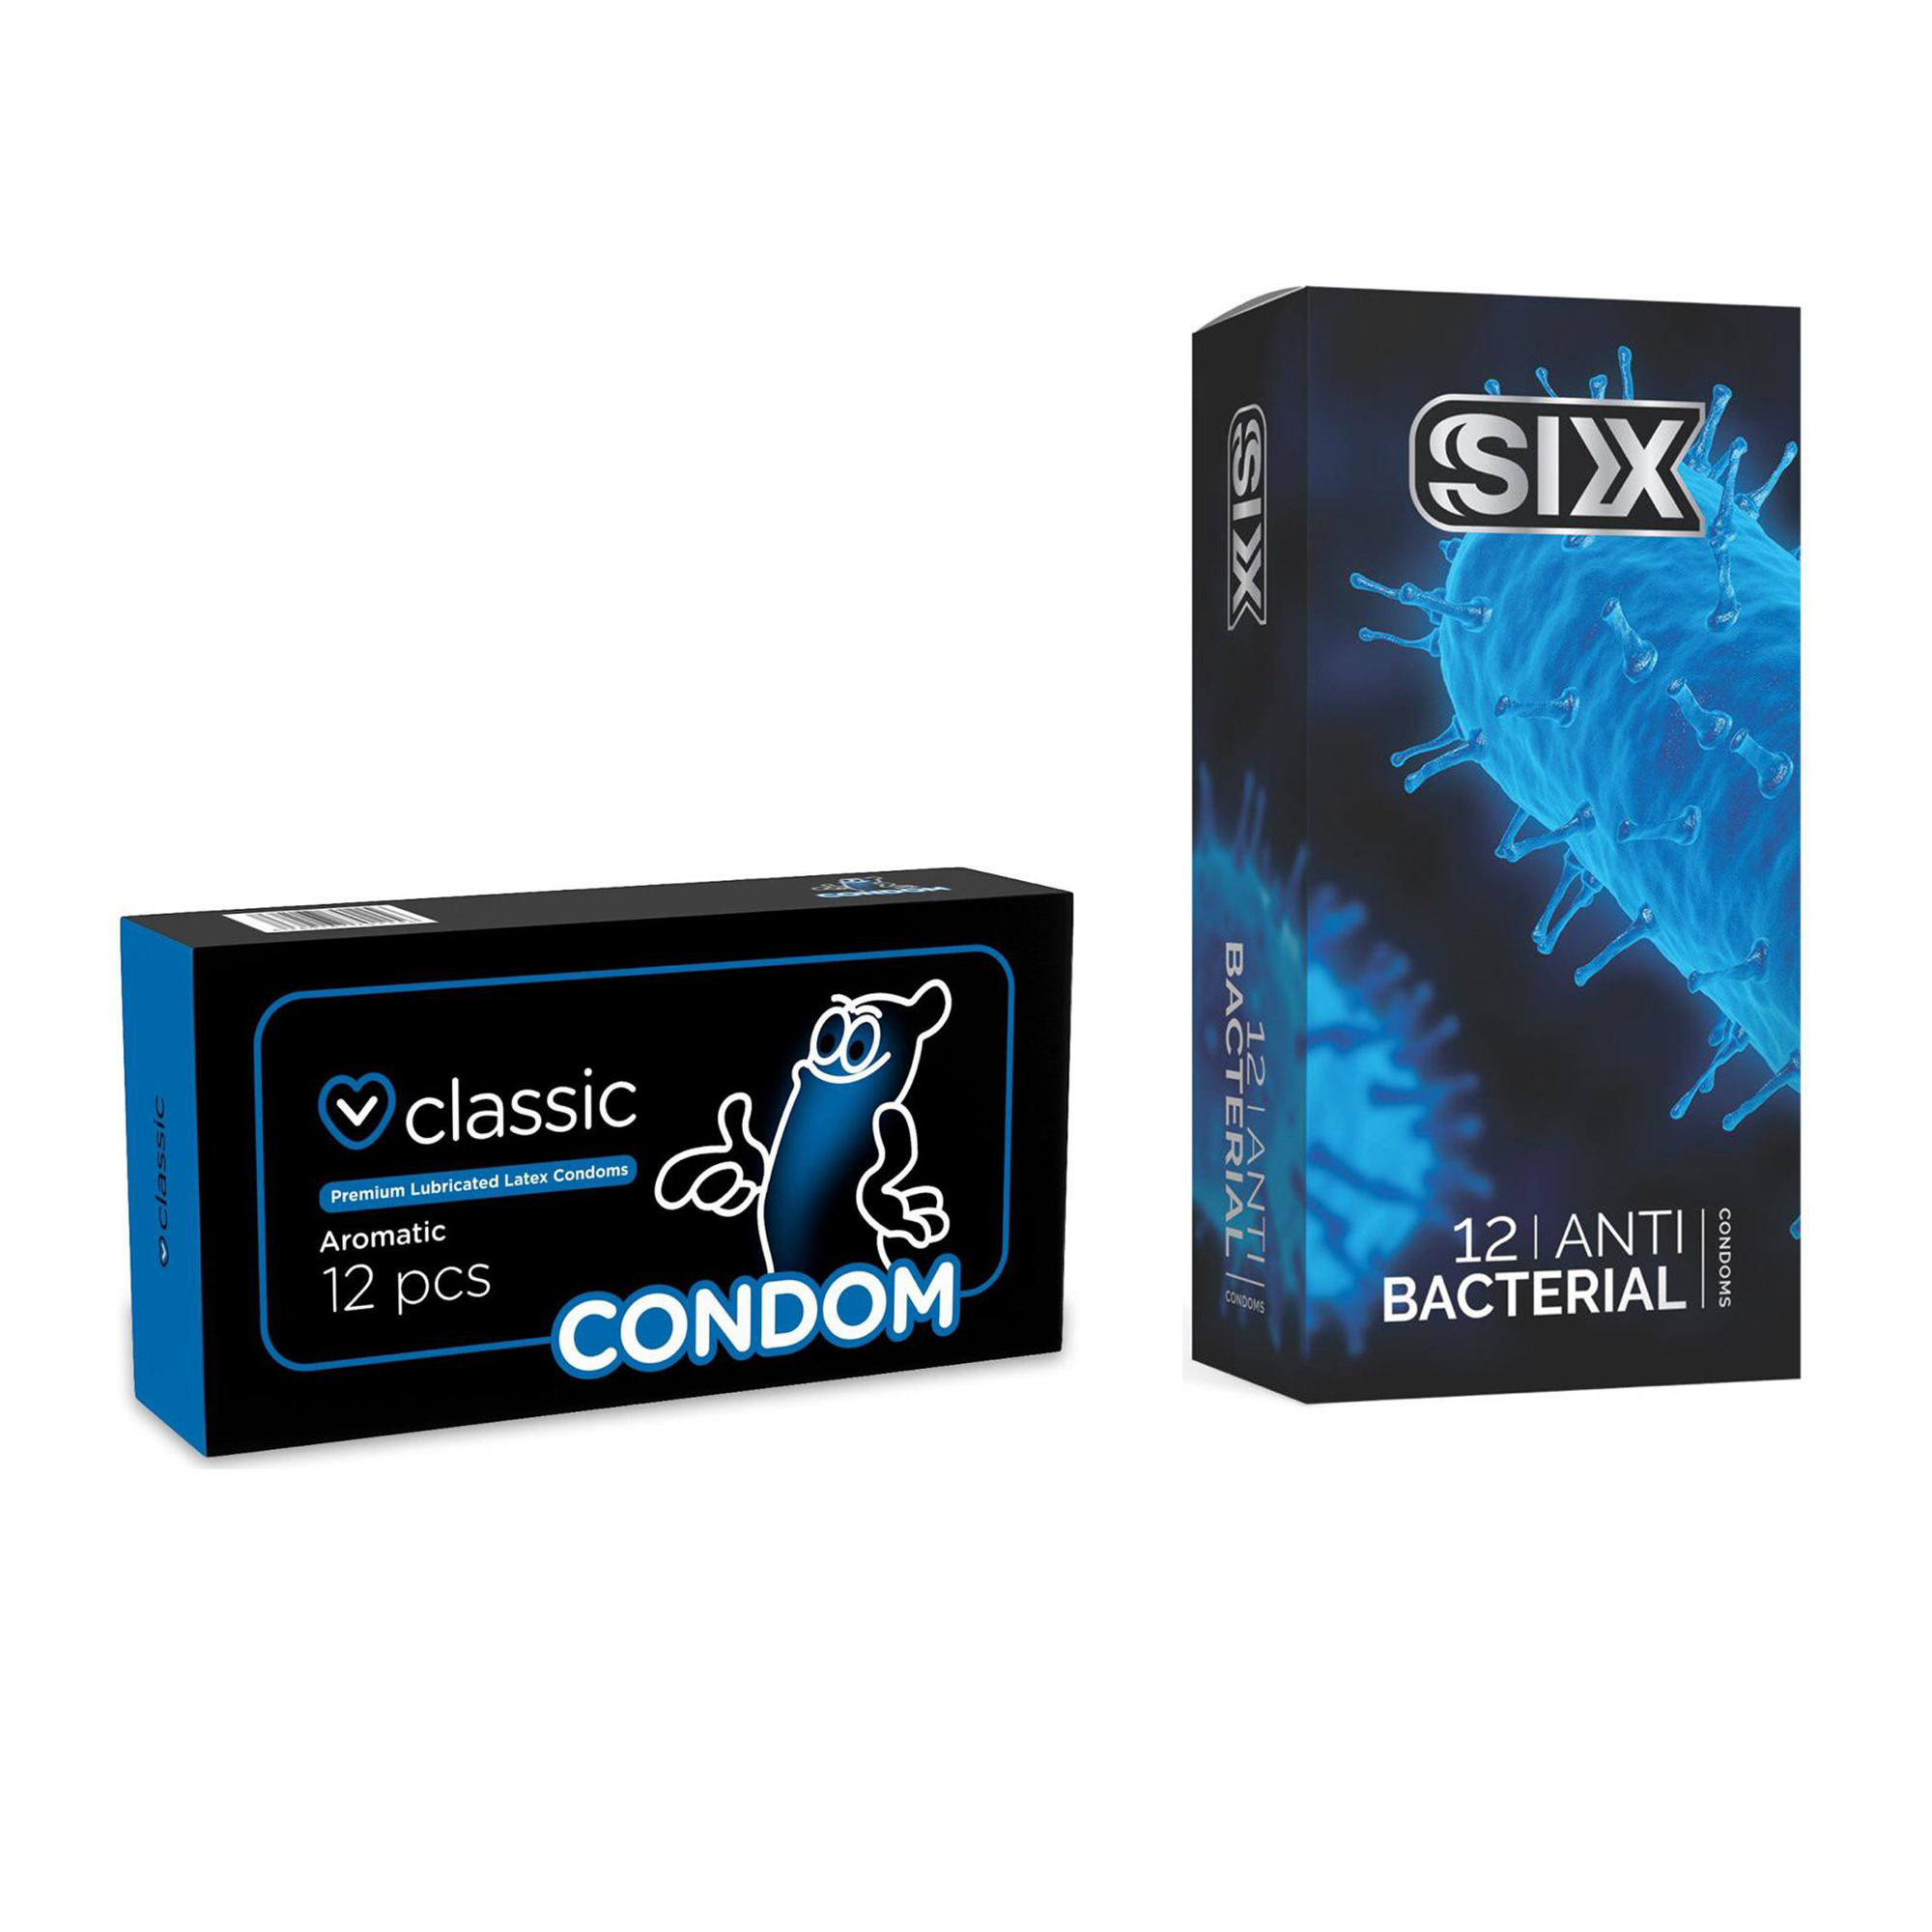 کاندوم سیکس مدل Anti Bacterial بسته 12 عددی به همراه کاندوم کاندوم مدل Classic بسته 12 عددی